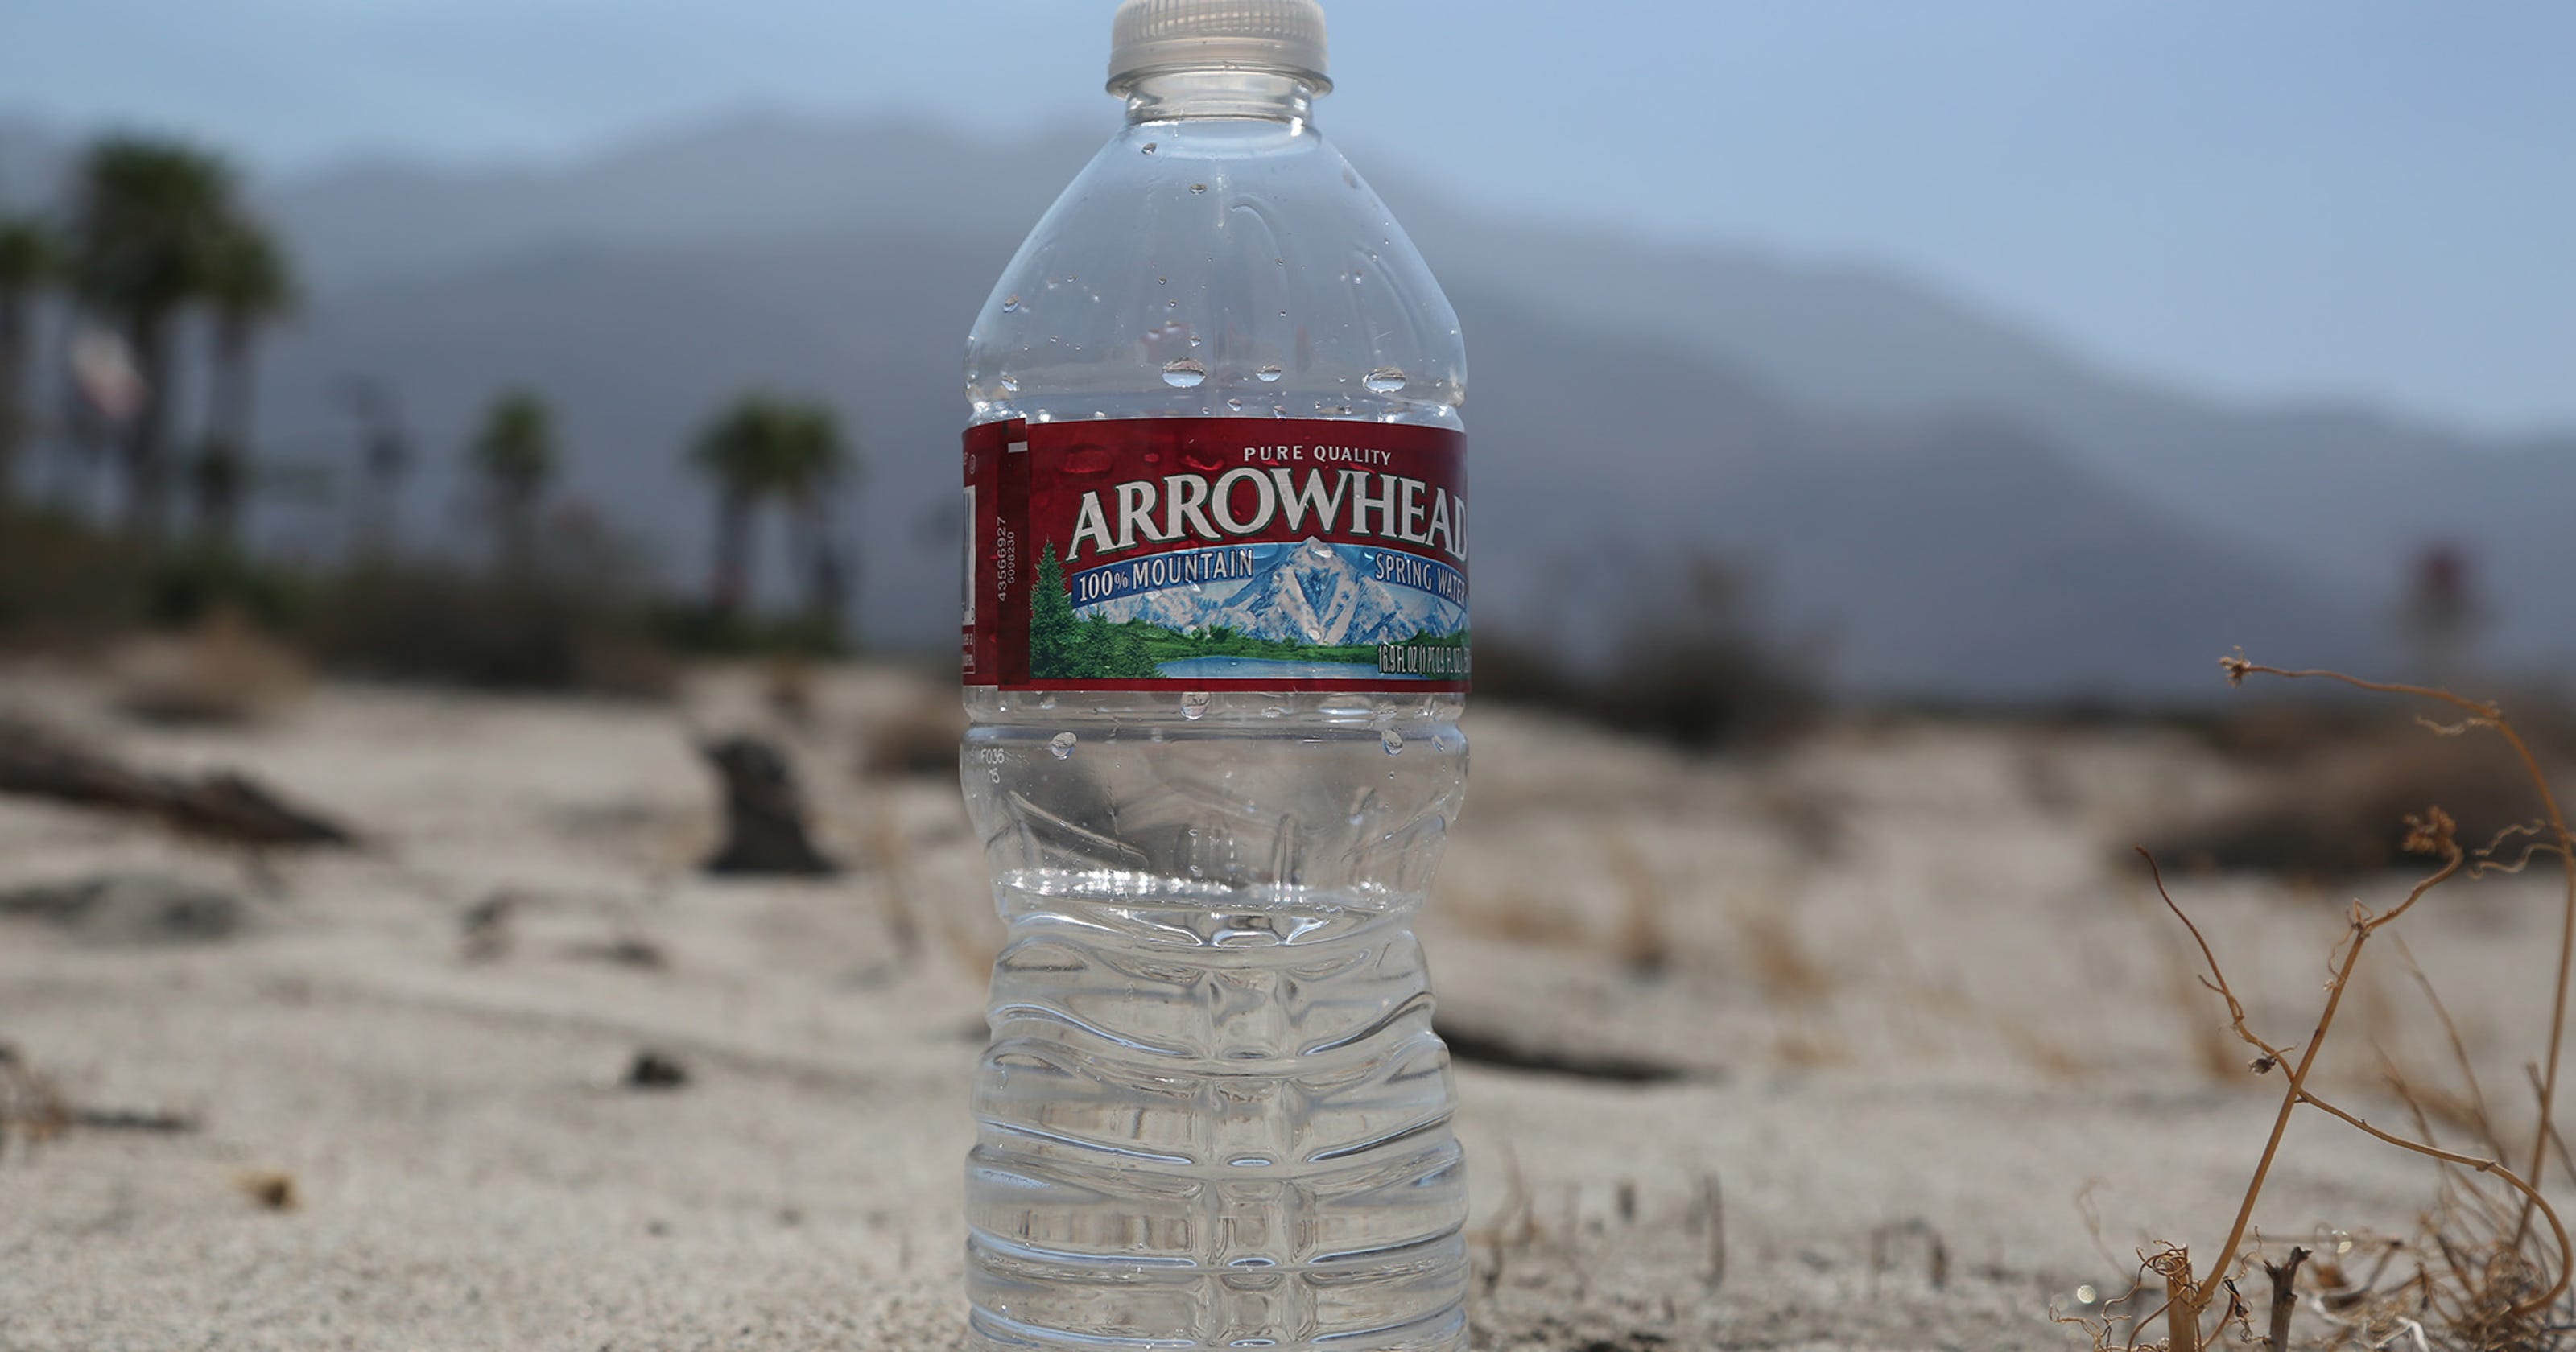 water nestle california drought reservation arrowhead bottle morongo desert plant bottled bottling expired bottles spring taps crimes granted access official